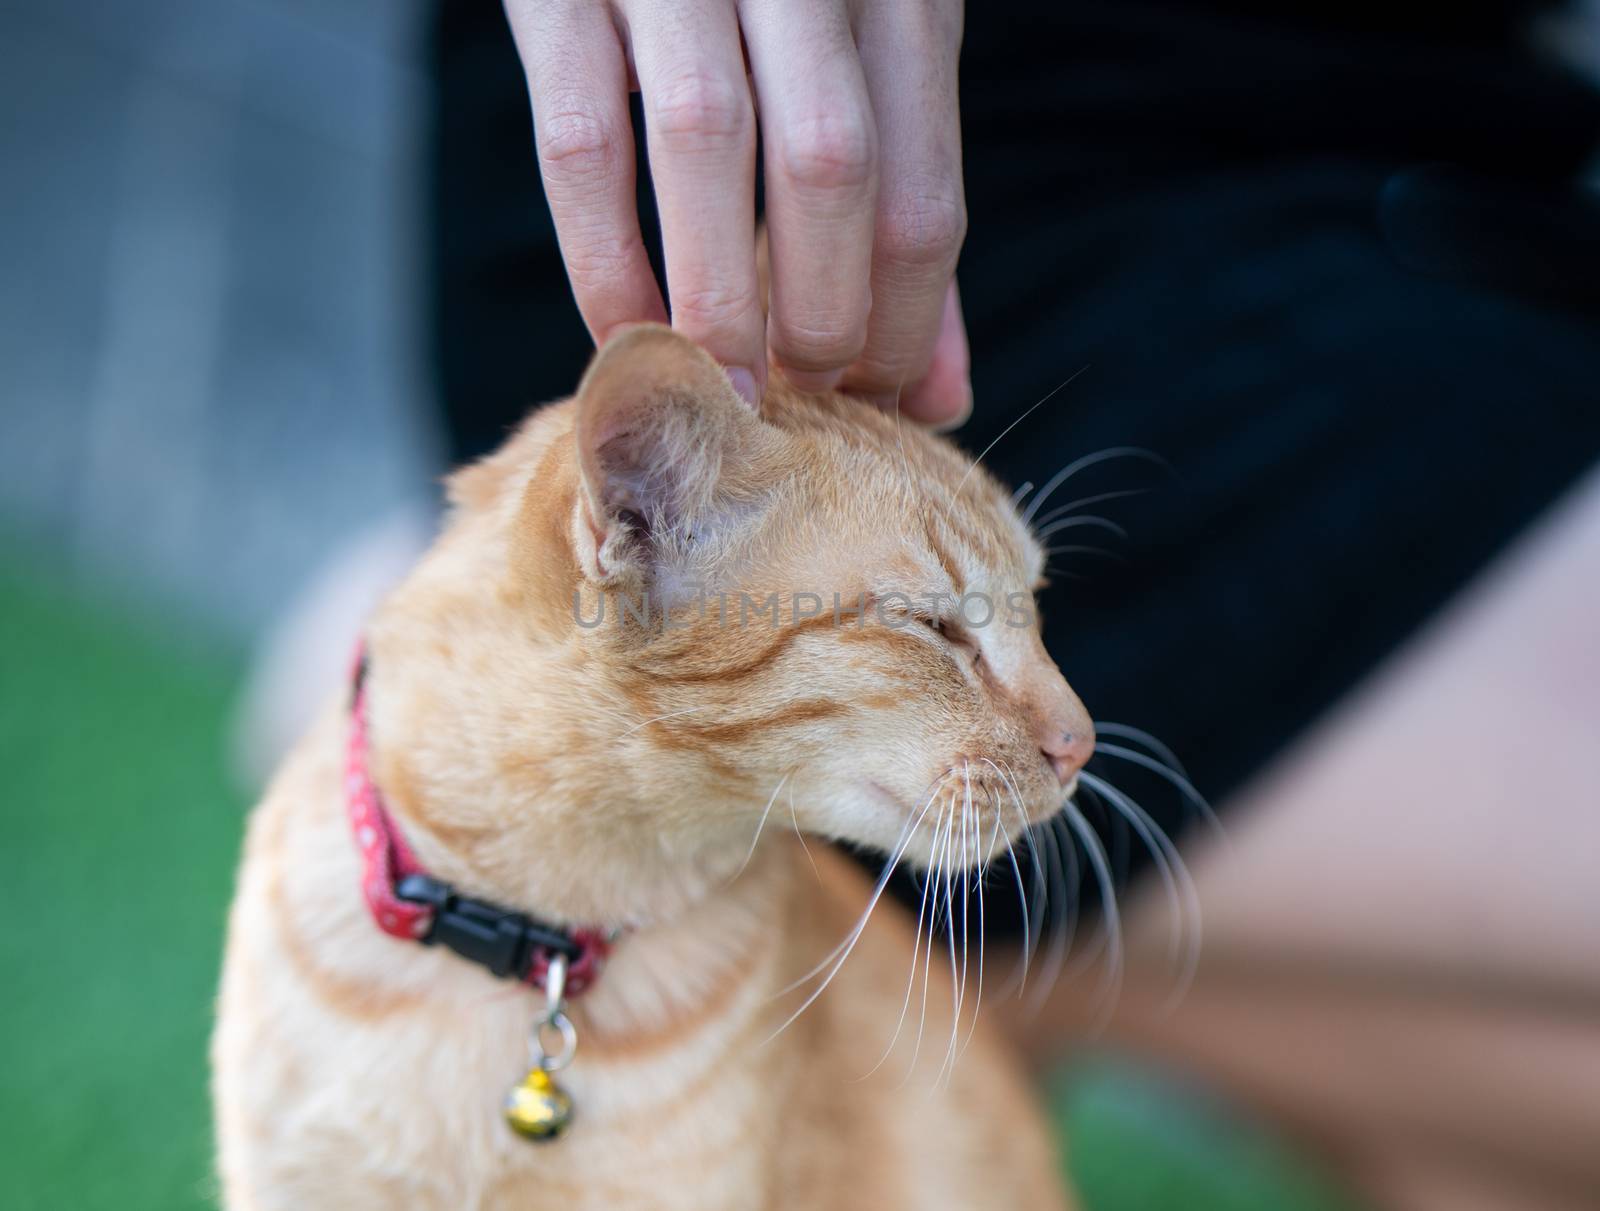 Woman hand scratching an orange cat.